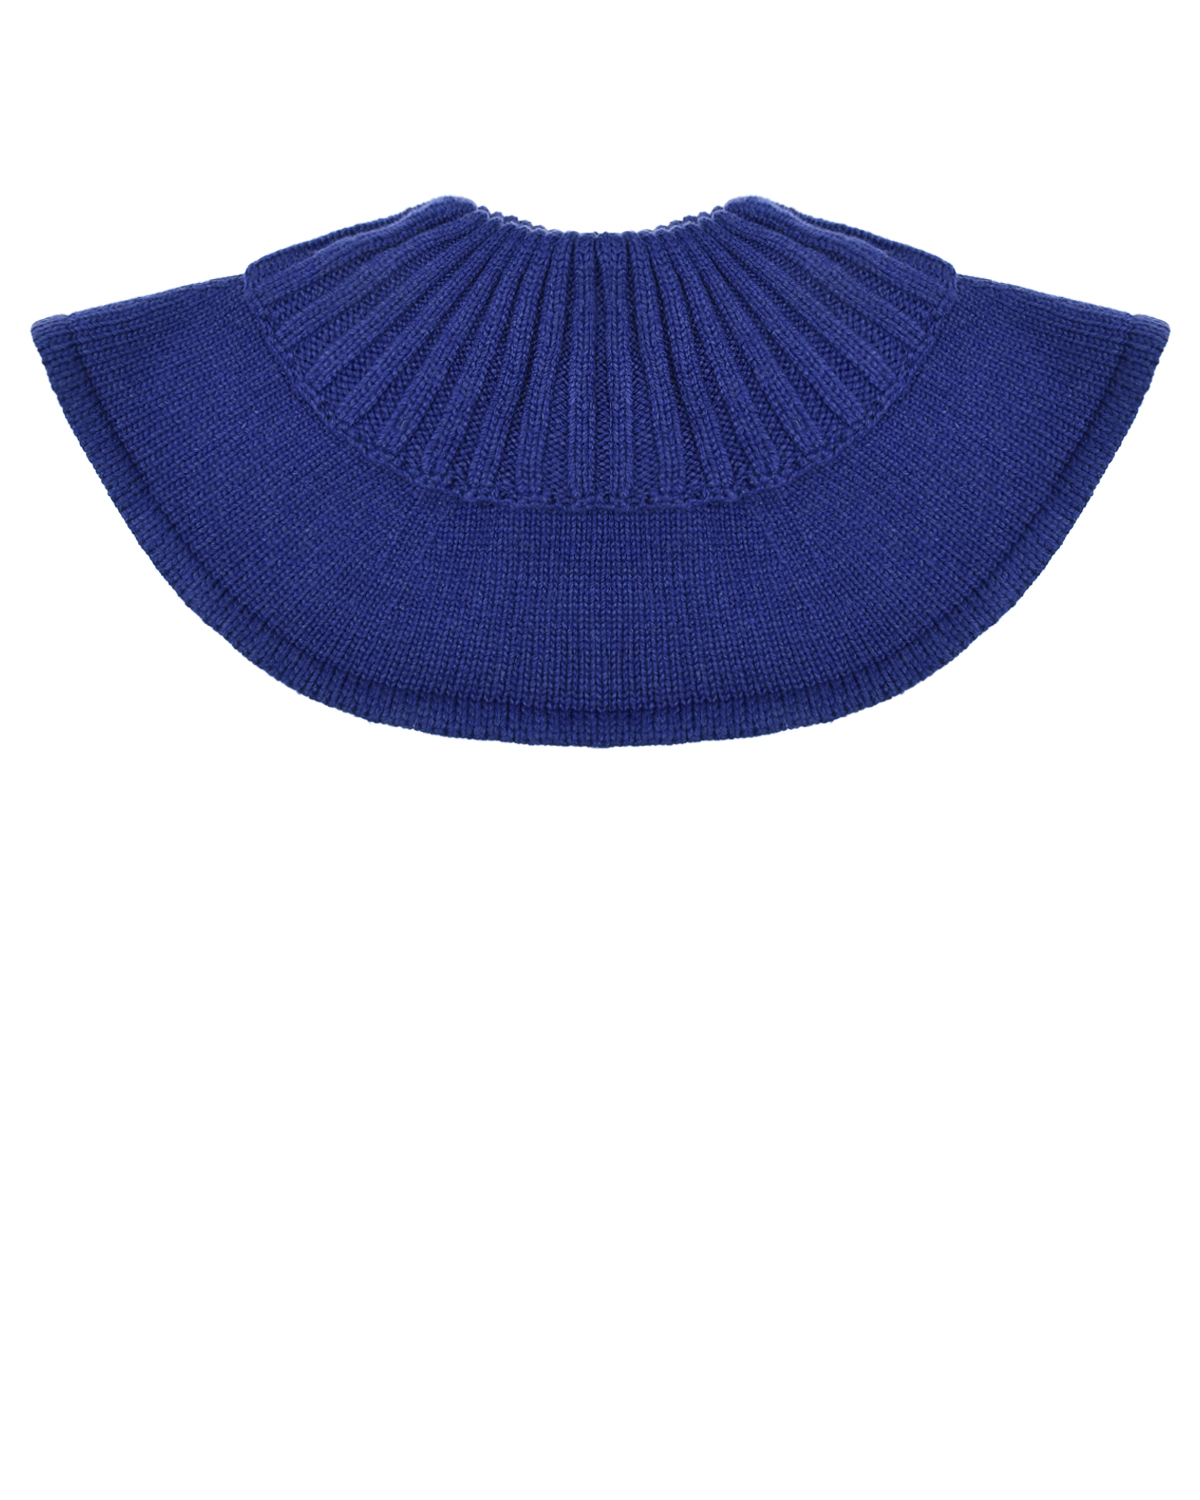 Синий вязаный шарф-горло Chobi детский, размер unica